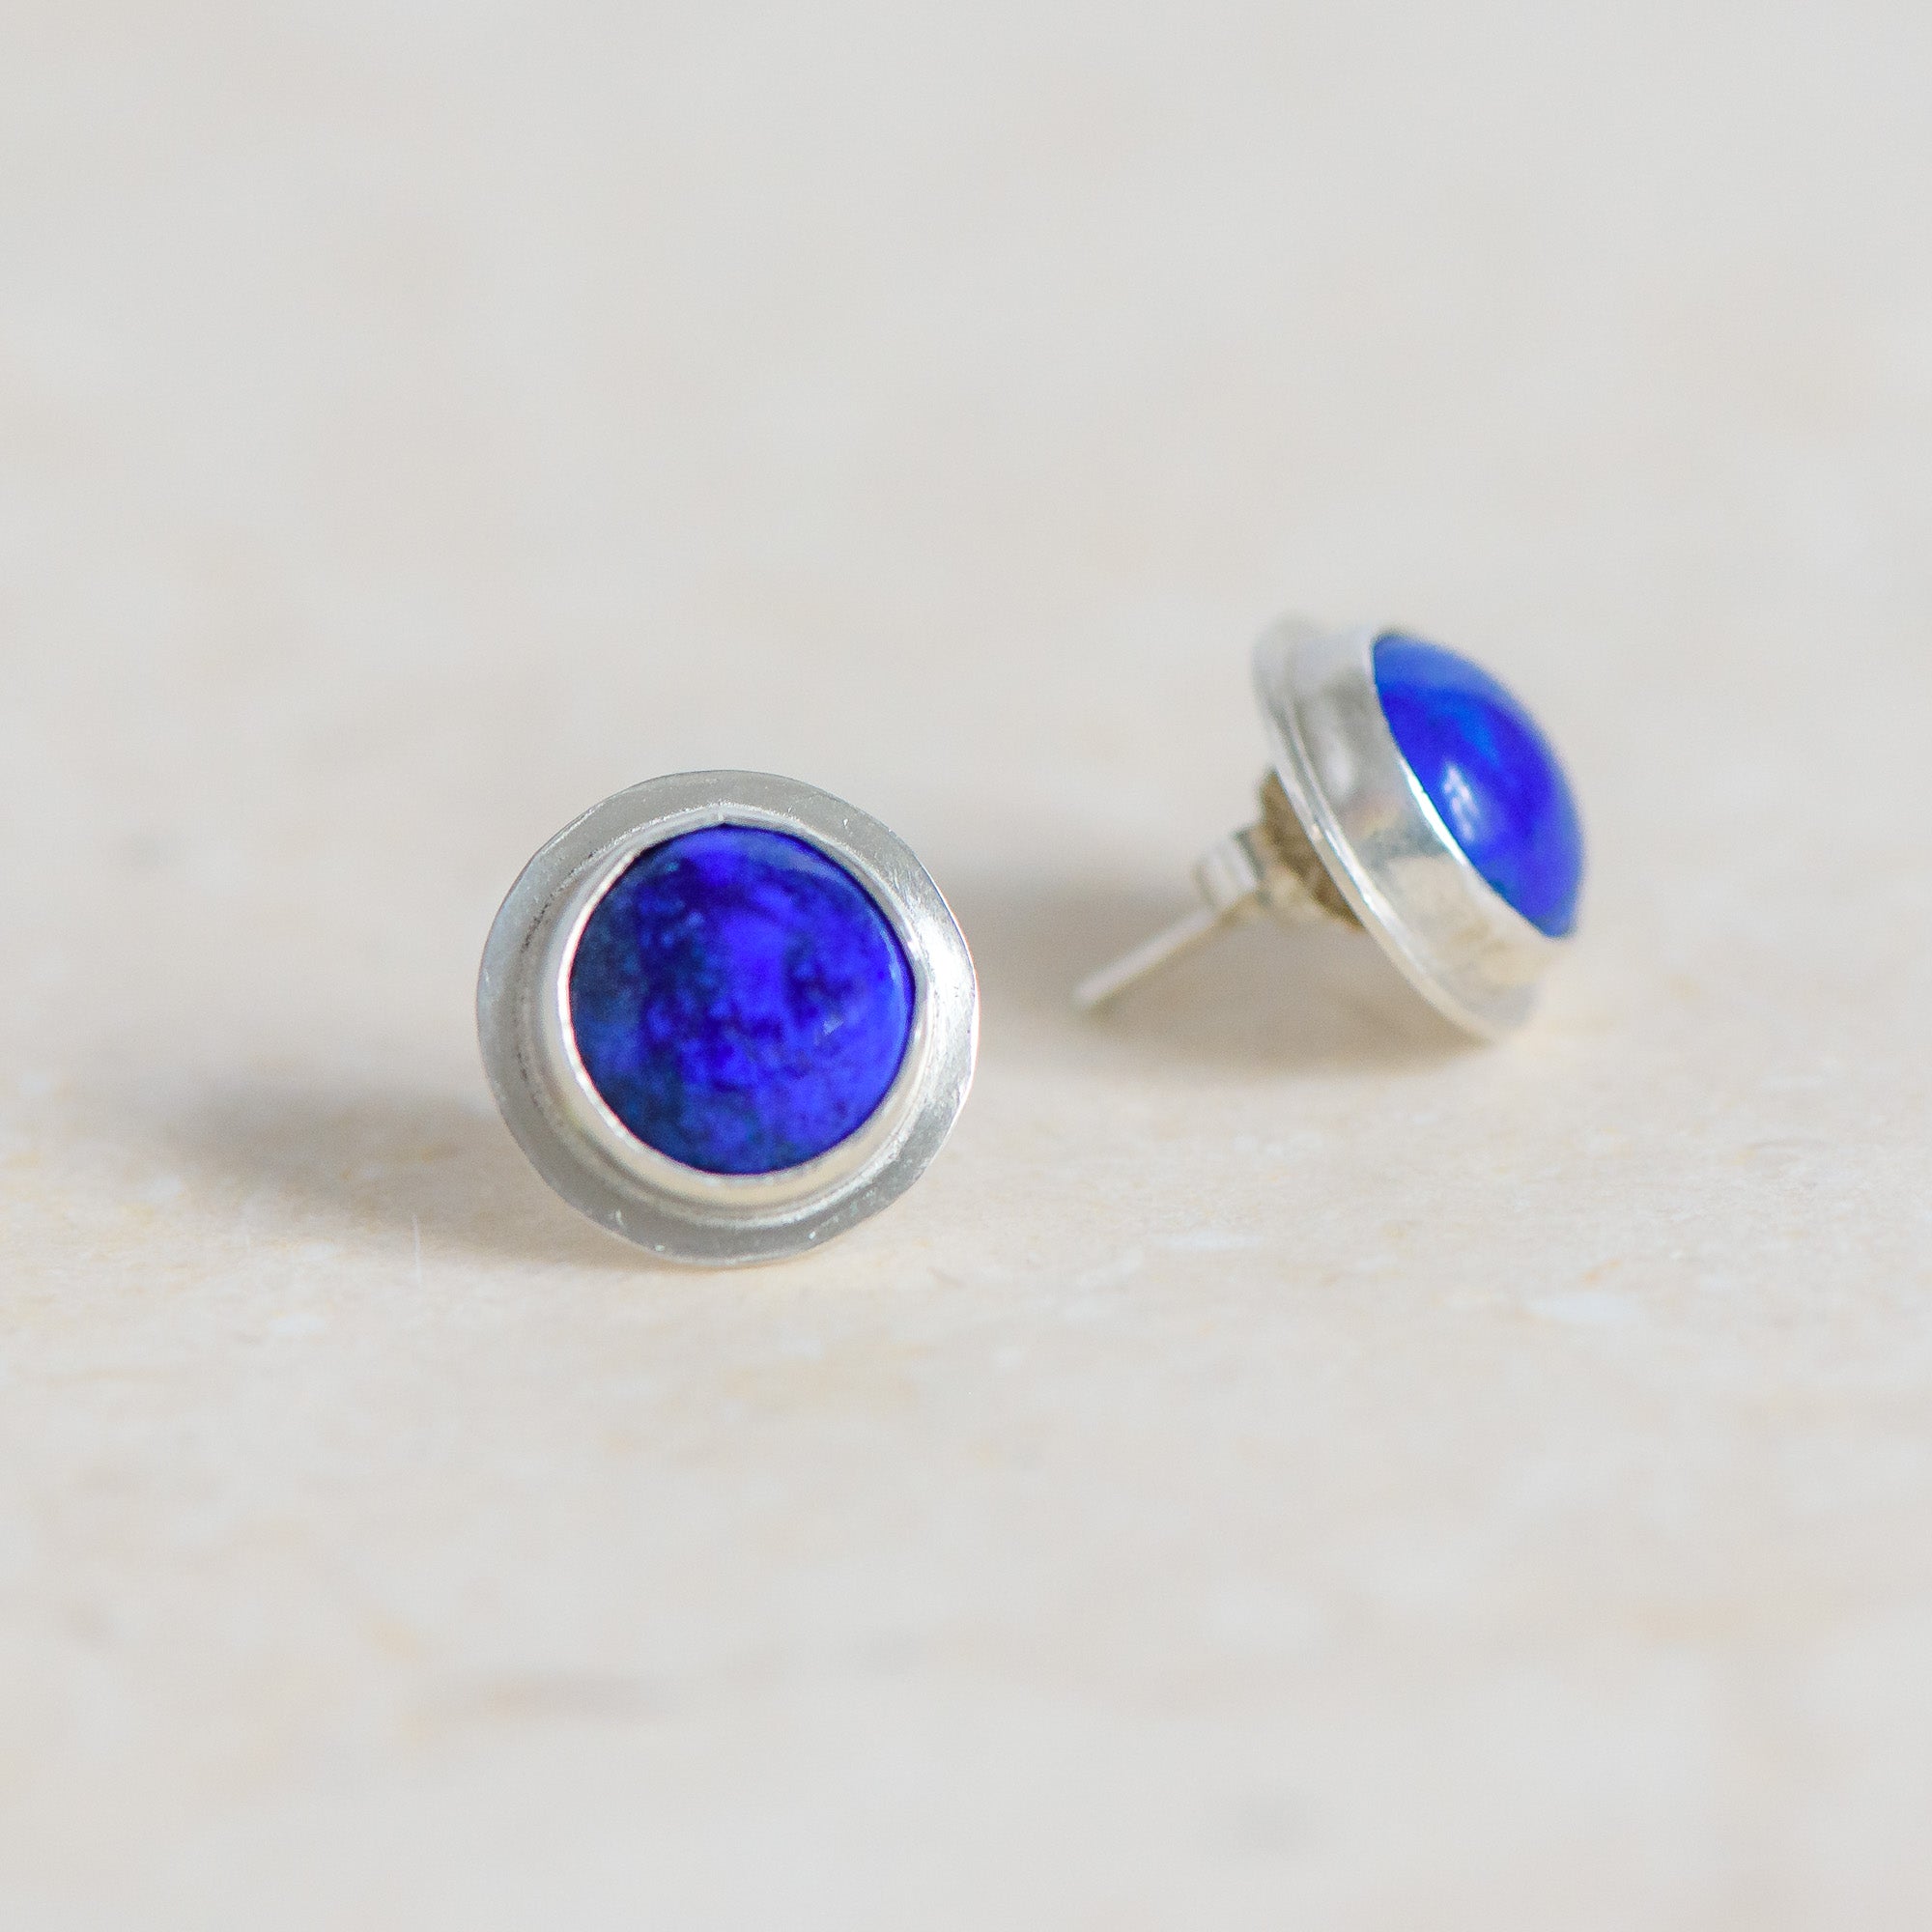 Lapis Lazuli Blue & Silver Stud Earrings. Handmade by Laura De Zordo Jewellery